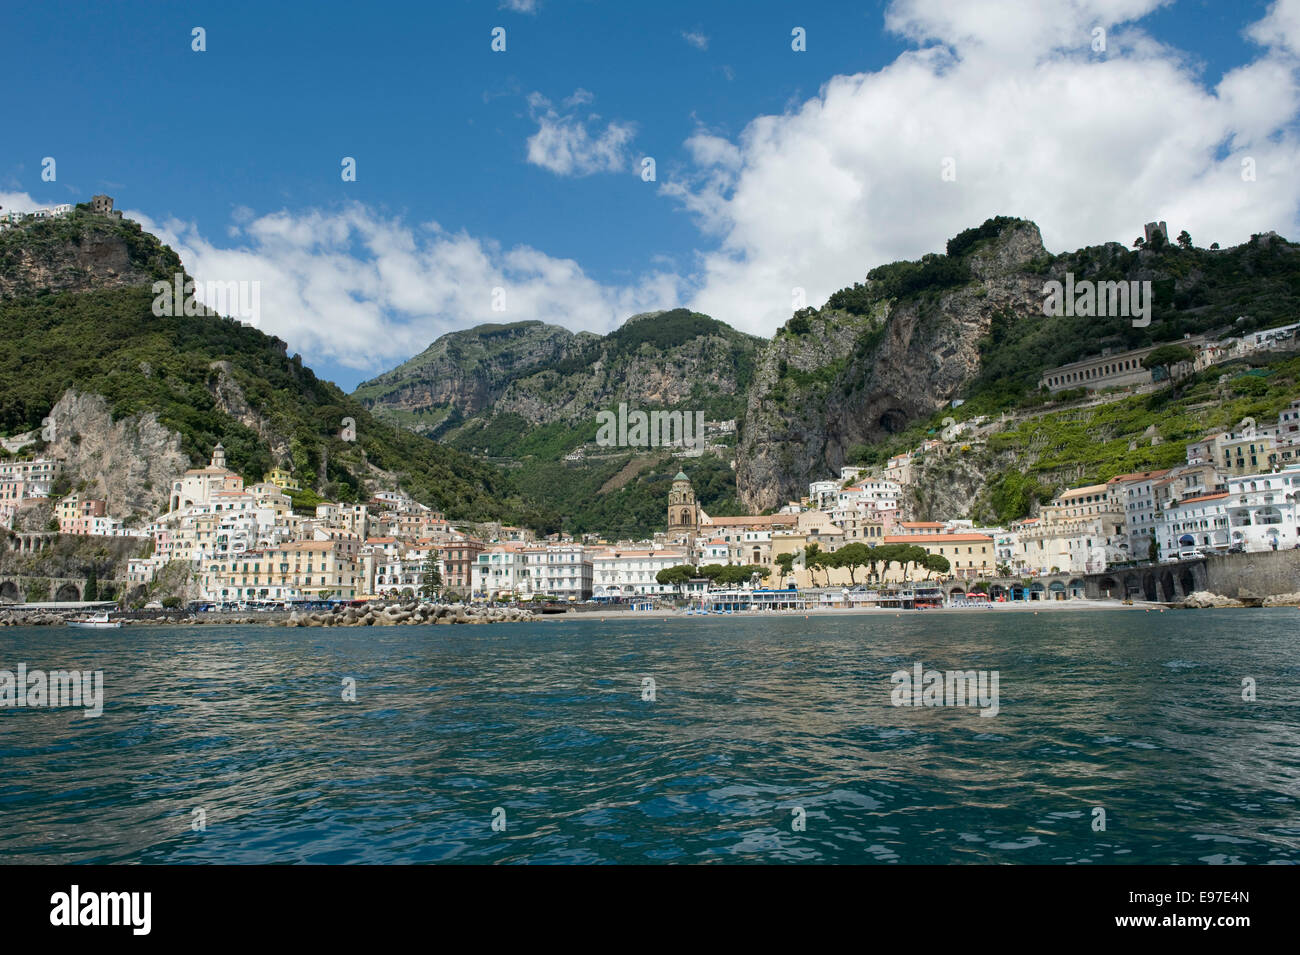 La ciudad de Atrani cerca de Amalfi visto desde un barco en la Bahía de Salerno, en la provincia de Salerno, Región de Campania, Italia Mayo Foto de stock